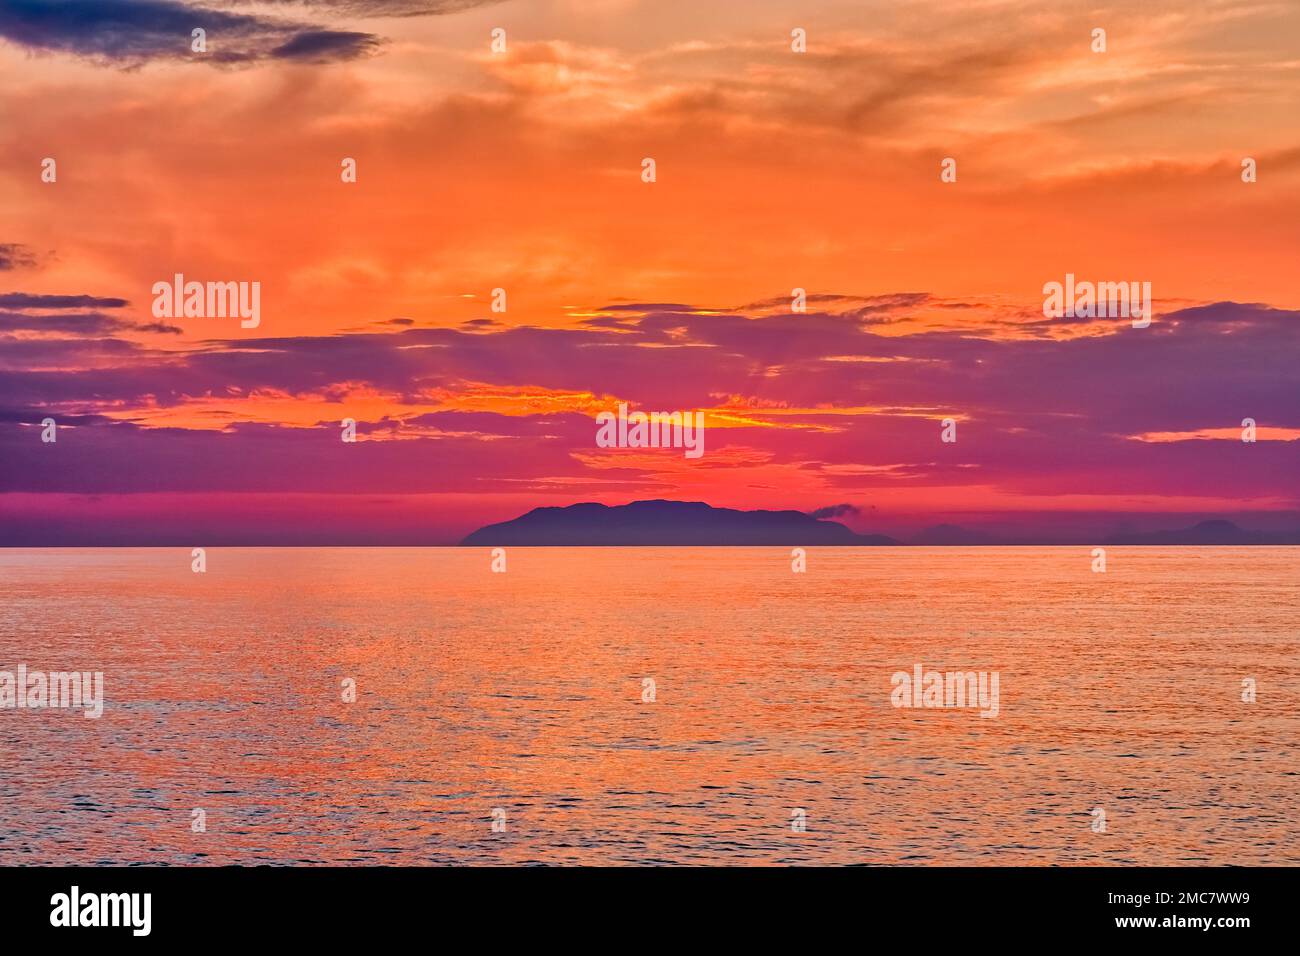 Sonnenuntergang über der Insel Vulcano, einer Insel der Lipari-Inseln im Tyrrhenischen Meer vor der Nordküste Siziliens. Stockfoto